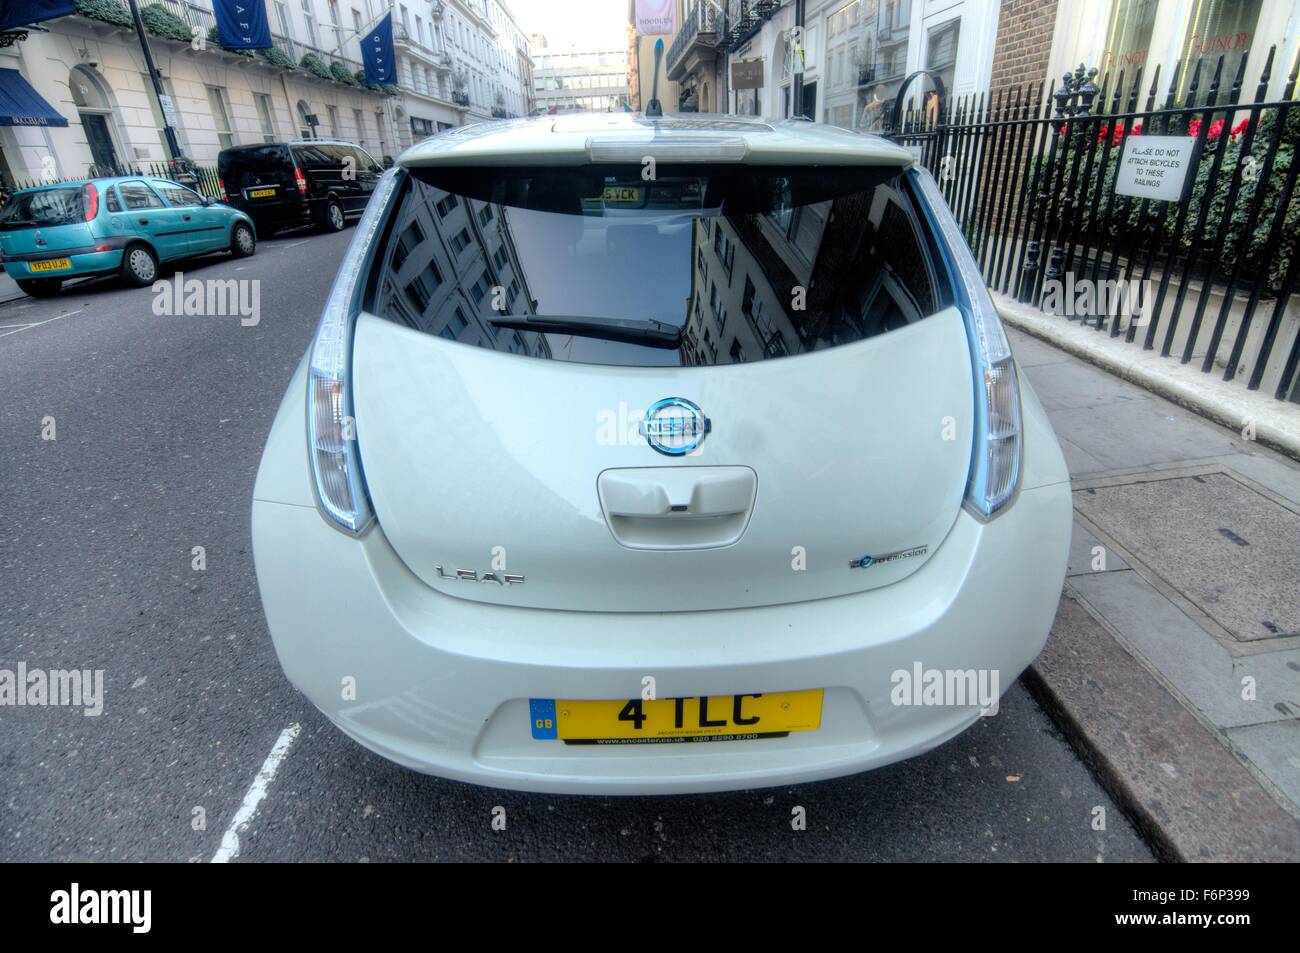 La Nissan LEAF voiture électrique. Eco friendly car. Conducteur écologique. Sauver la planète, la plaque de numéro personnalisé Banque D'Images